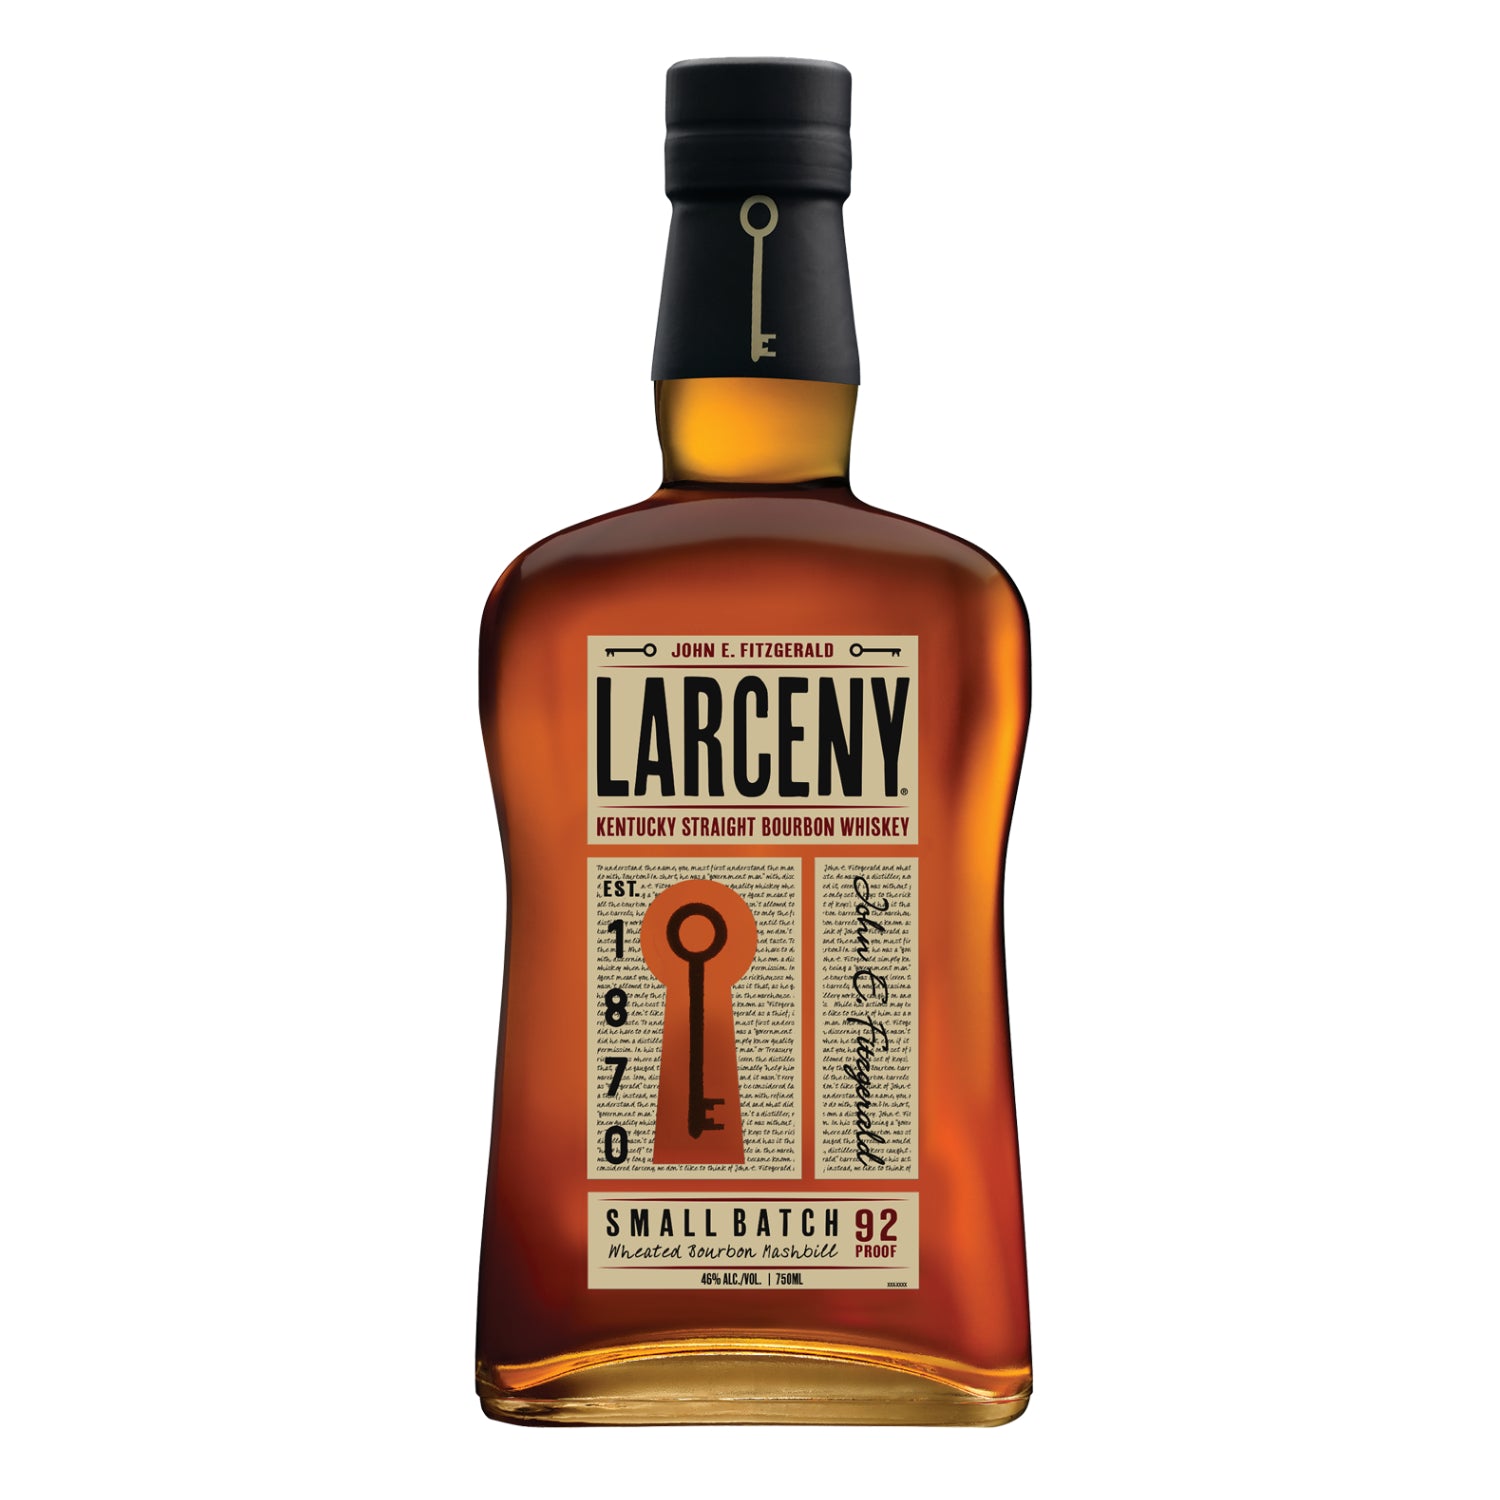 Larceny Kentucky Straight Bourbon Whisky